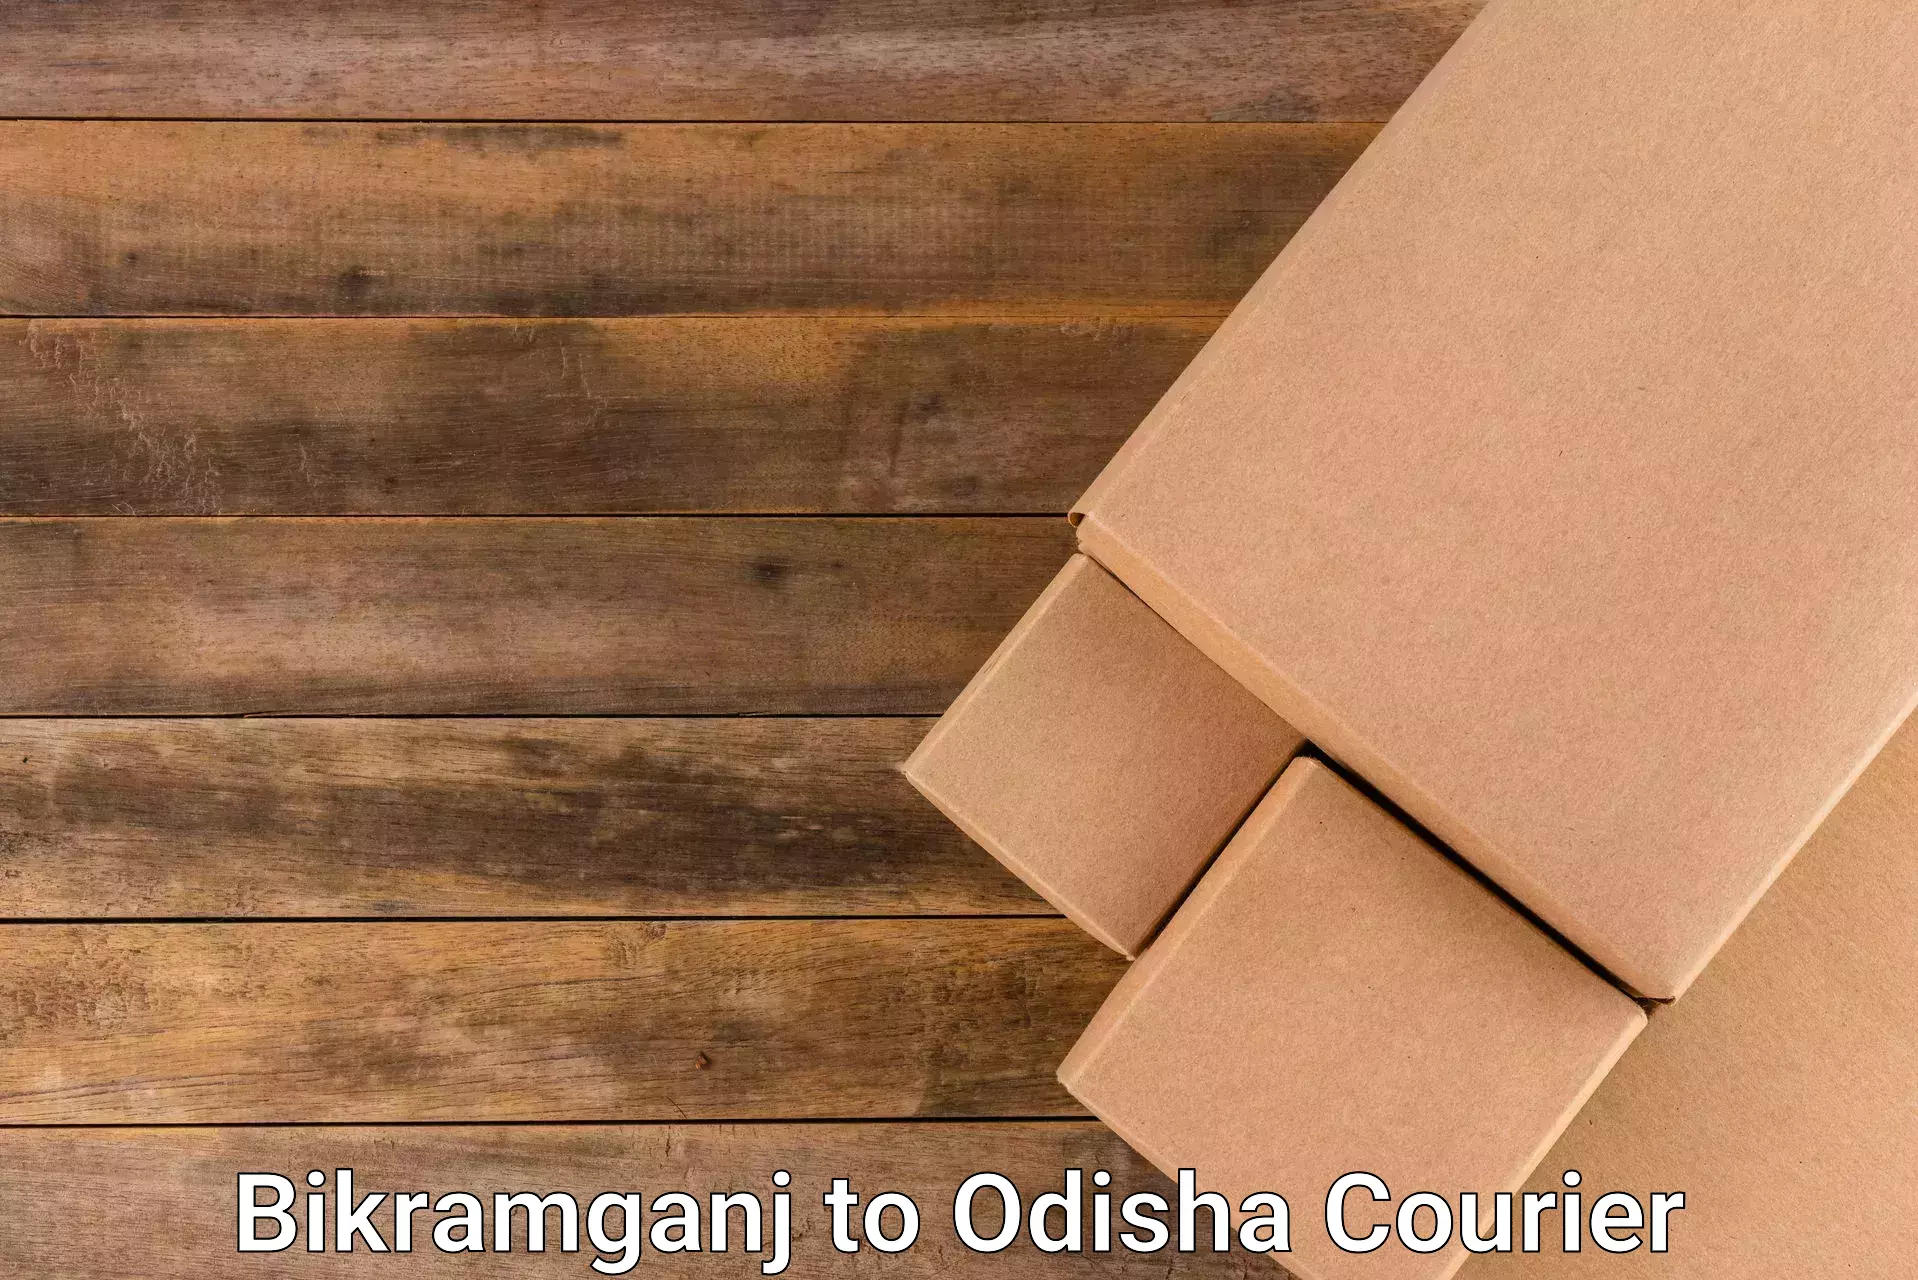 Efficient parcel service Bikramganj to Sukinda